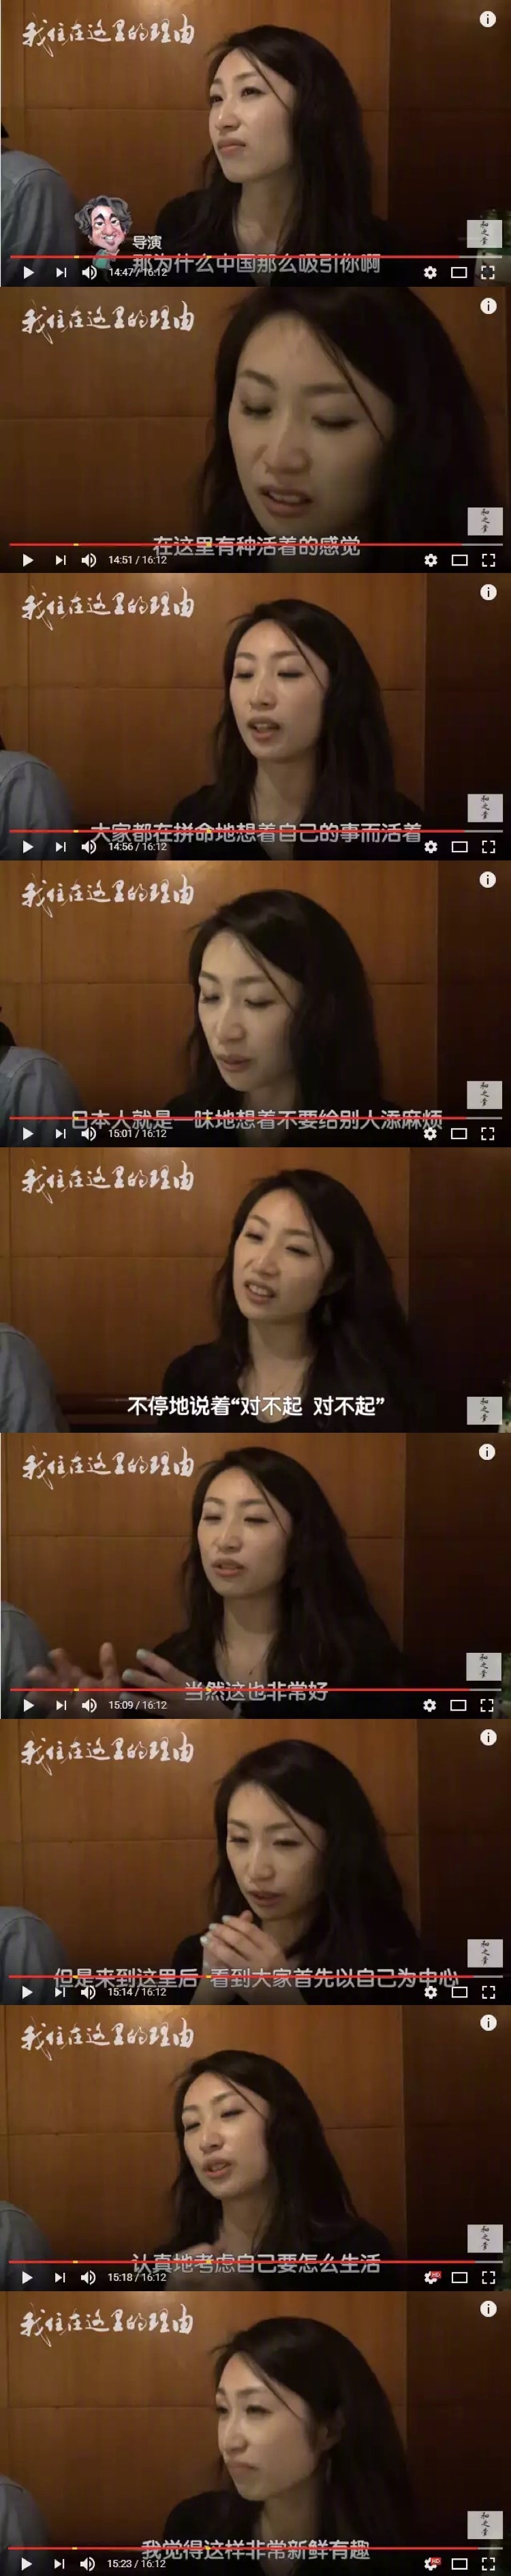 一个纪录片导演问这个在上海做美容的日本女孩：中国为什么吸引你？ ​​​​